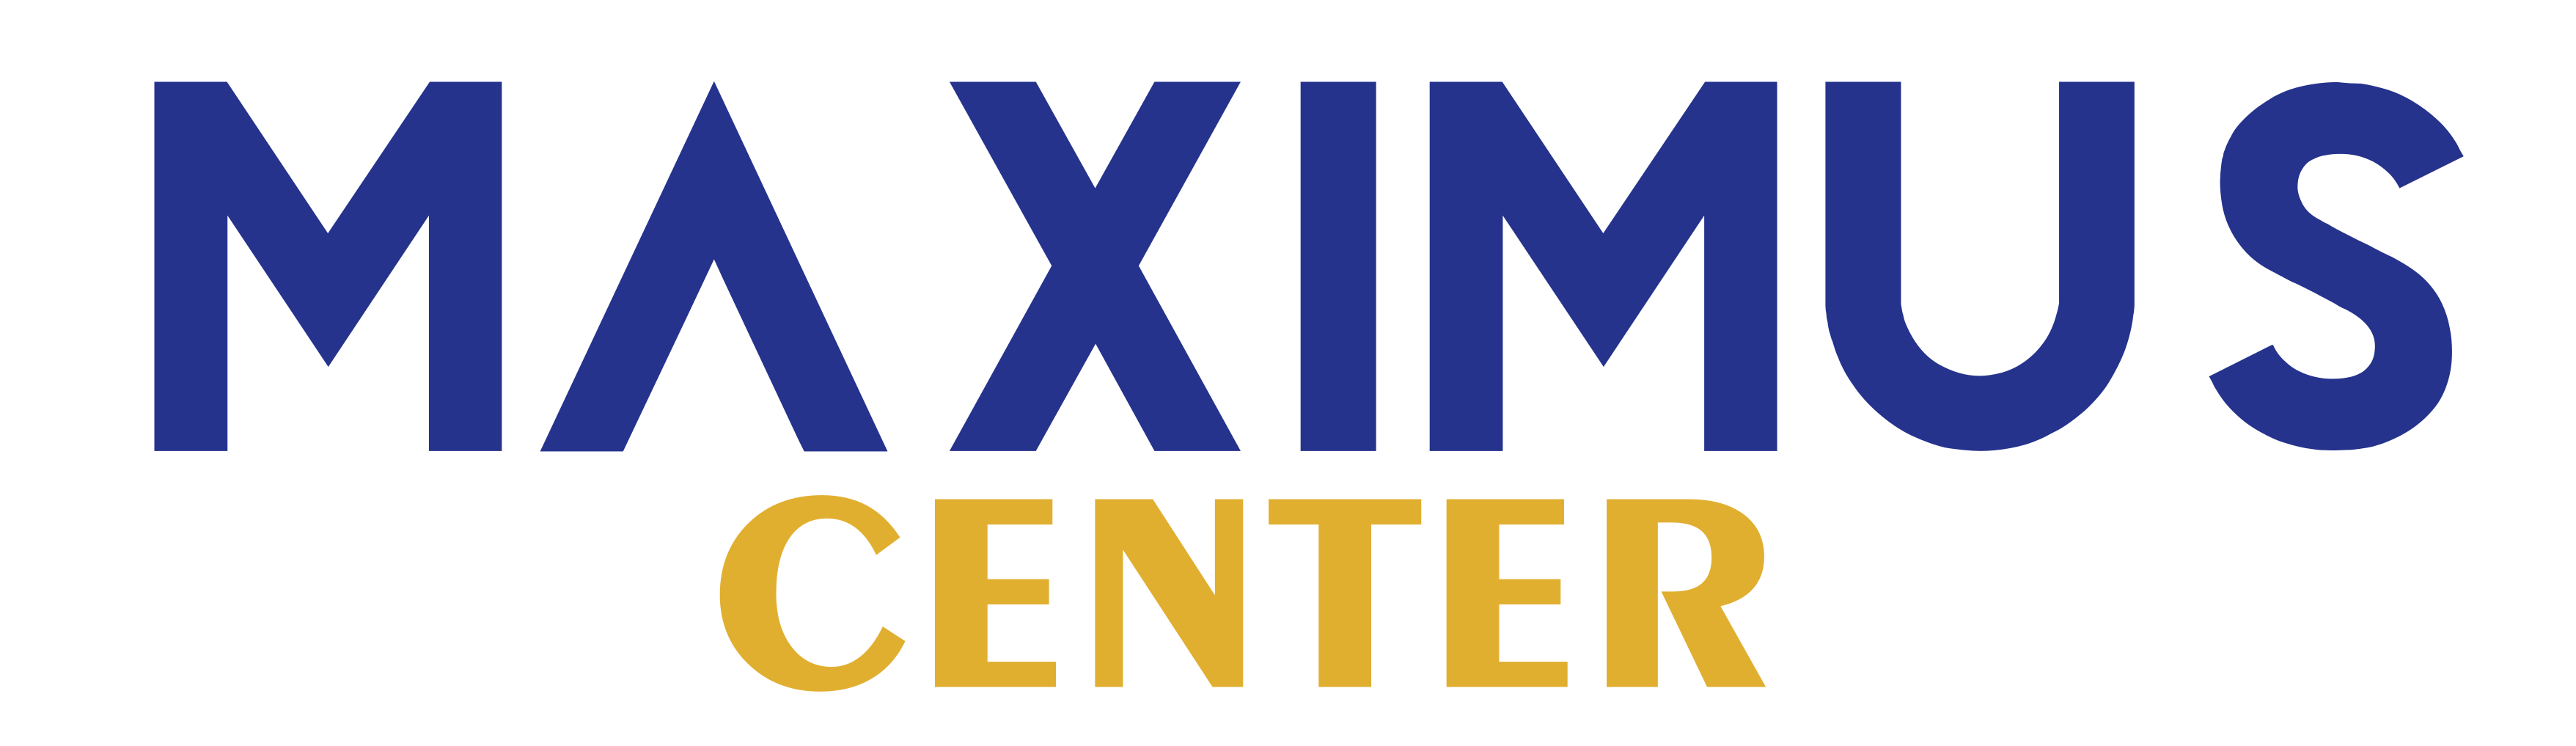 Maximus Center